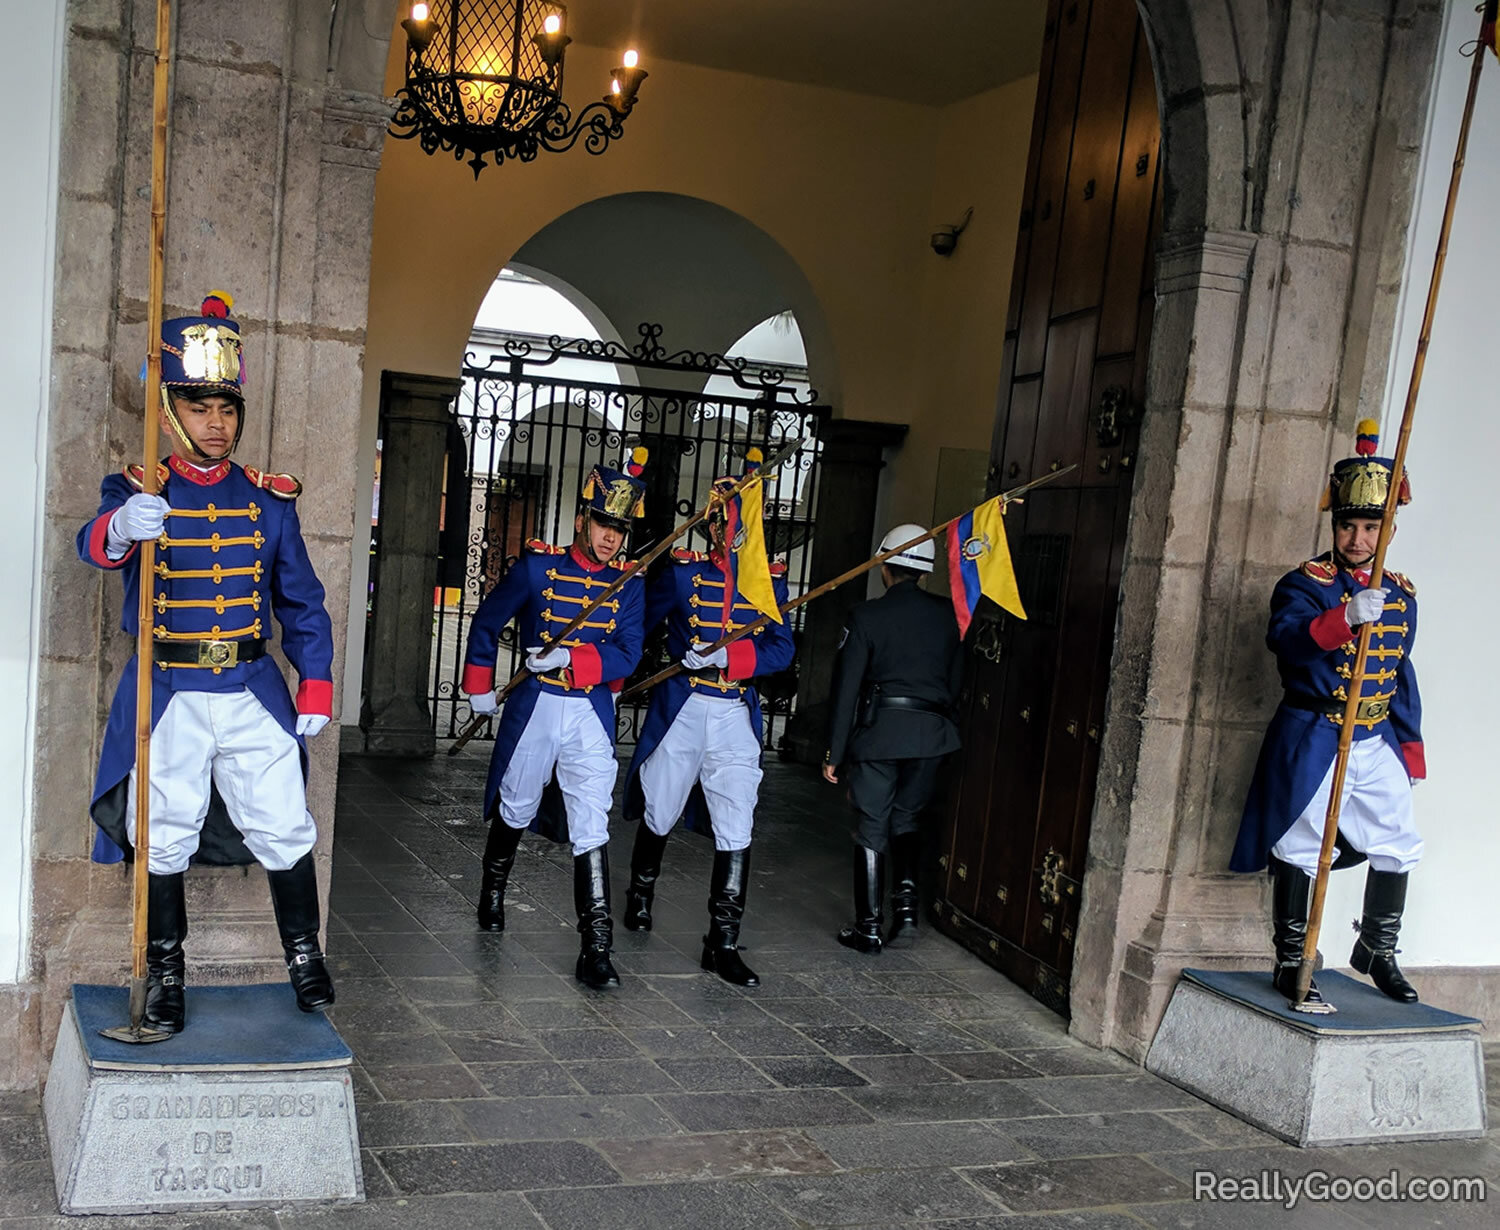 Guards in Quito, Ecuador